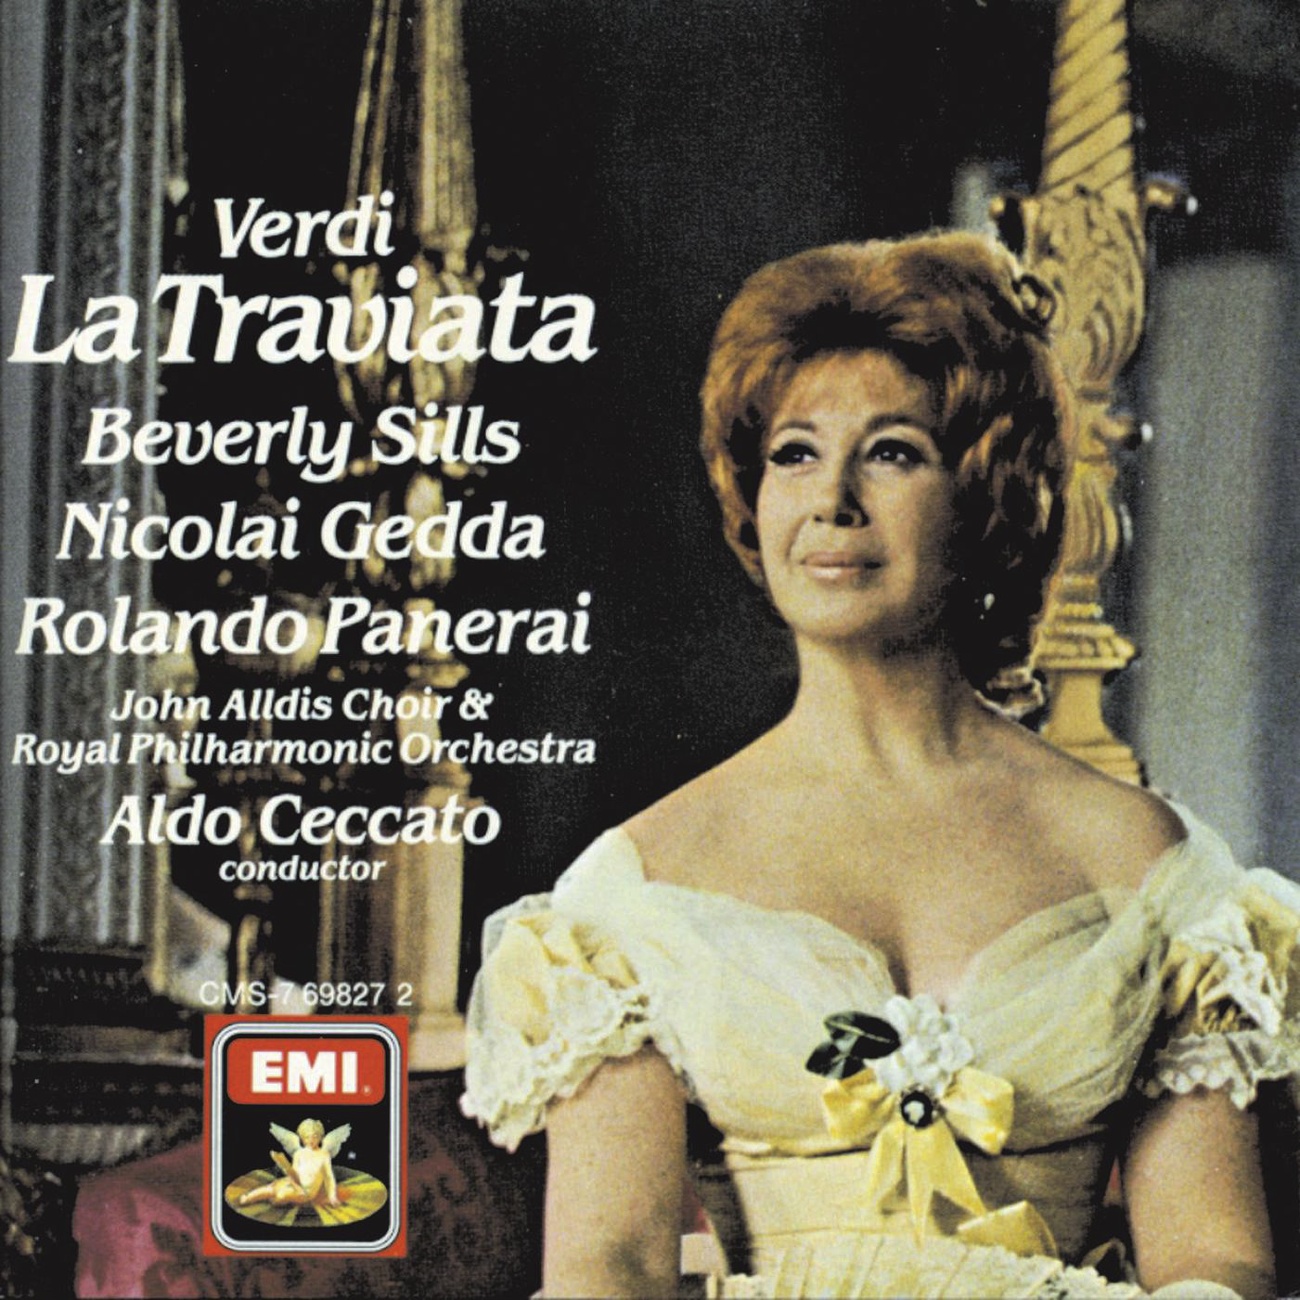 La Traviata (1988 Digital Remaster), Act I: Si ridesta in ciel l'aurora (tutti)